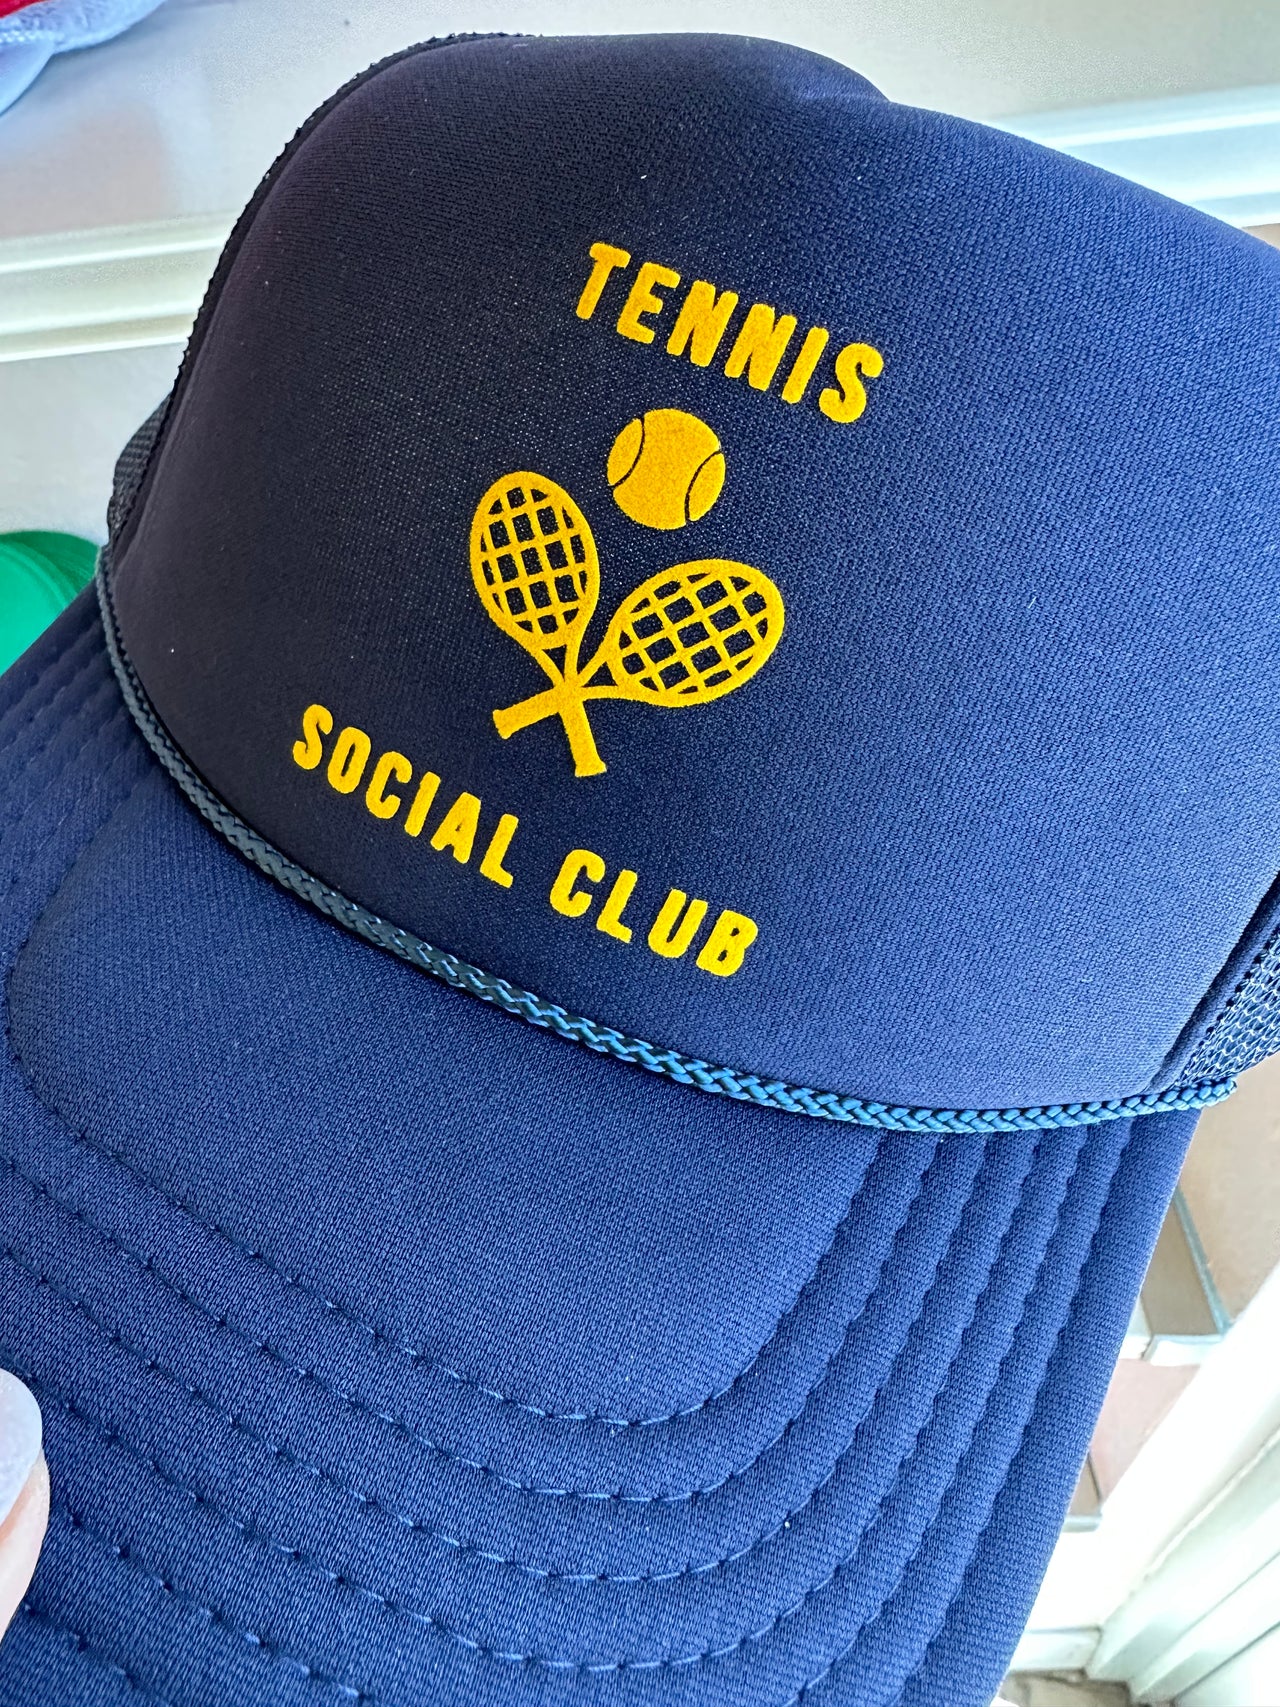 Tennis Social Club Trucker - Navy